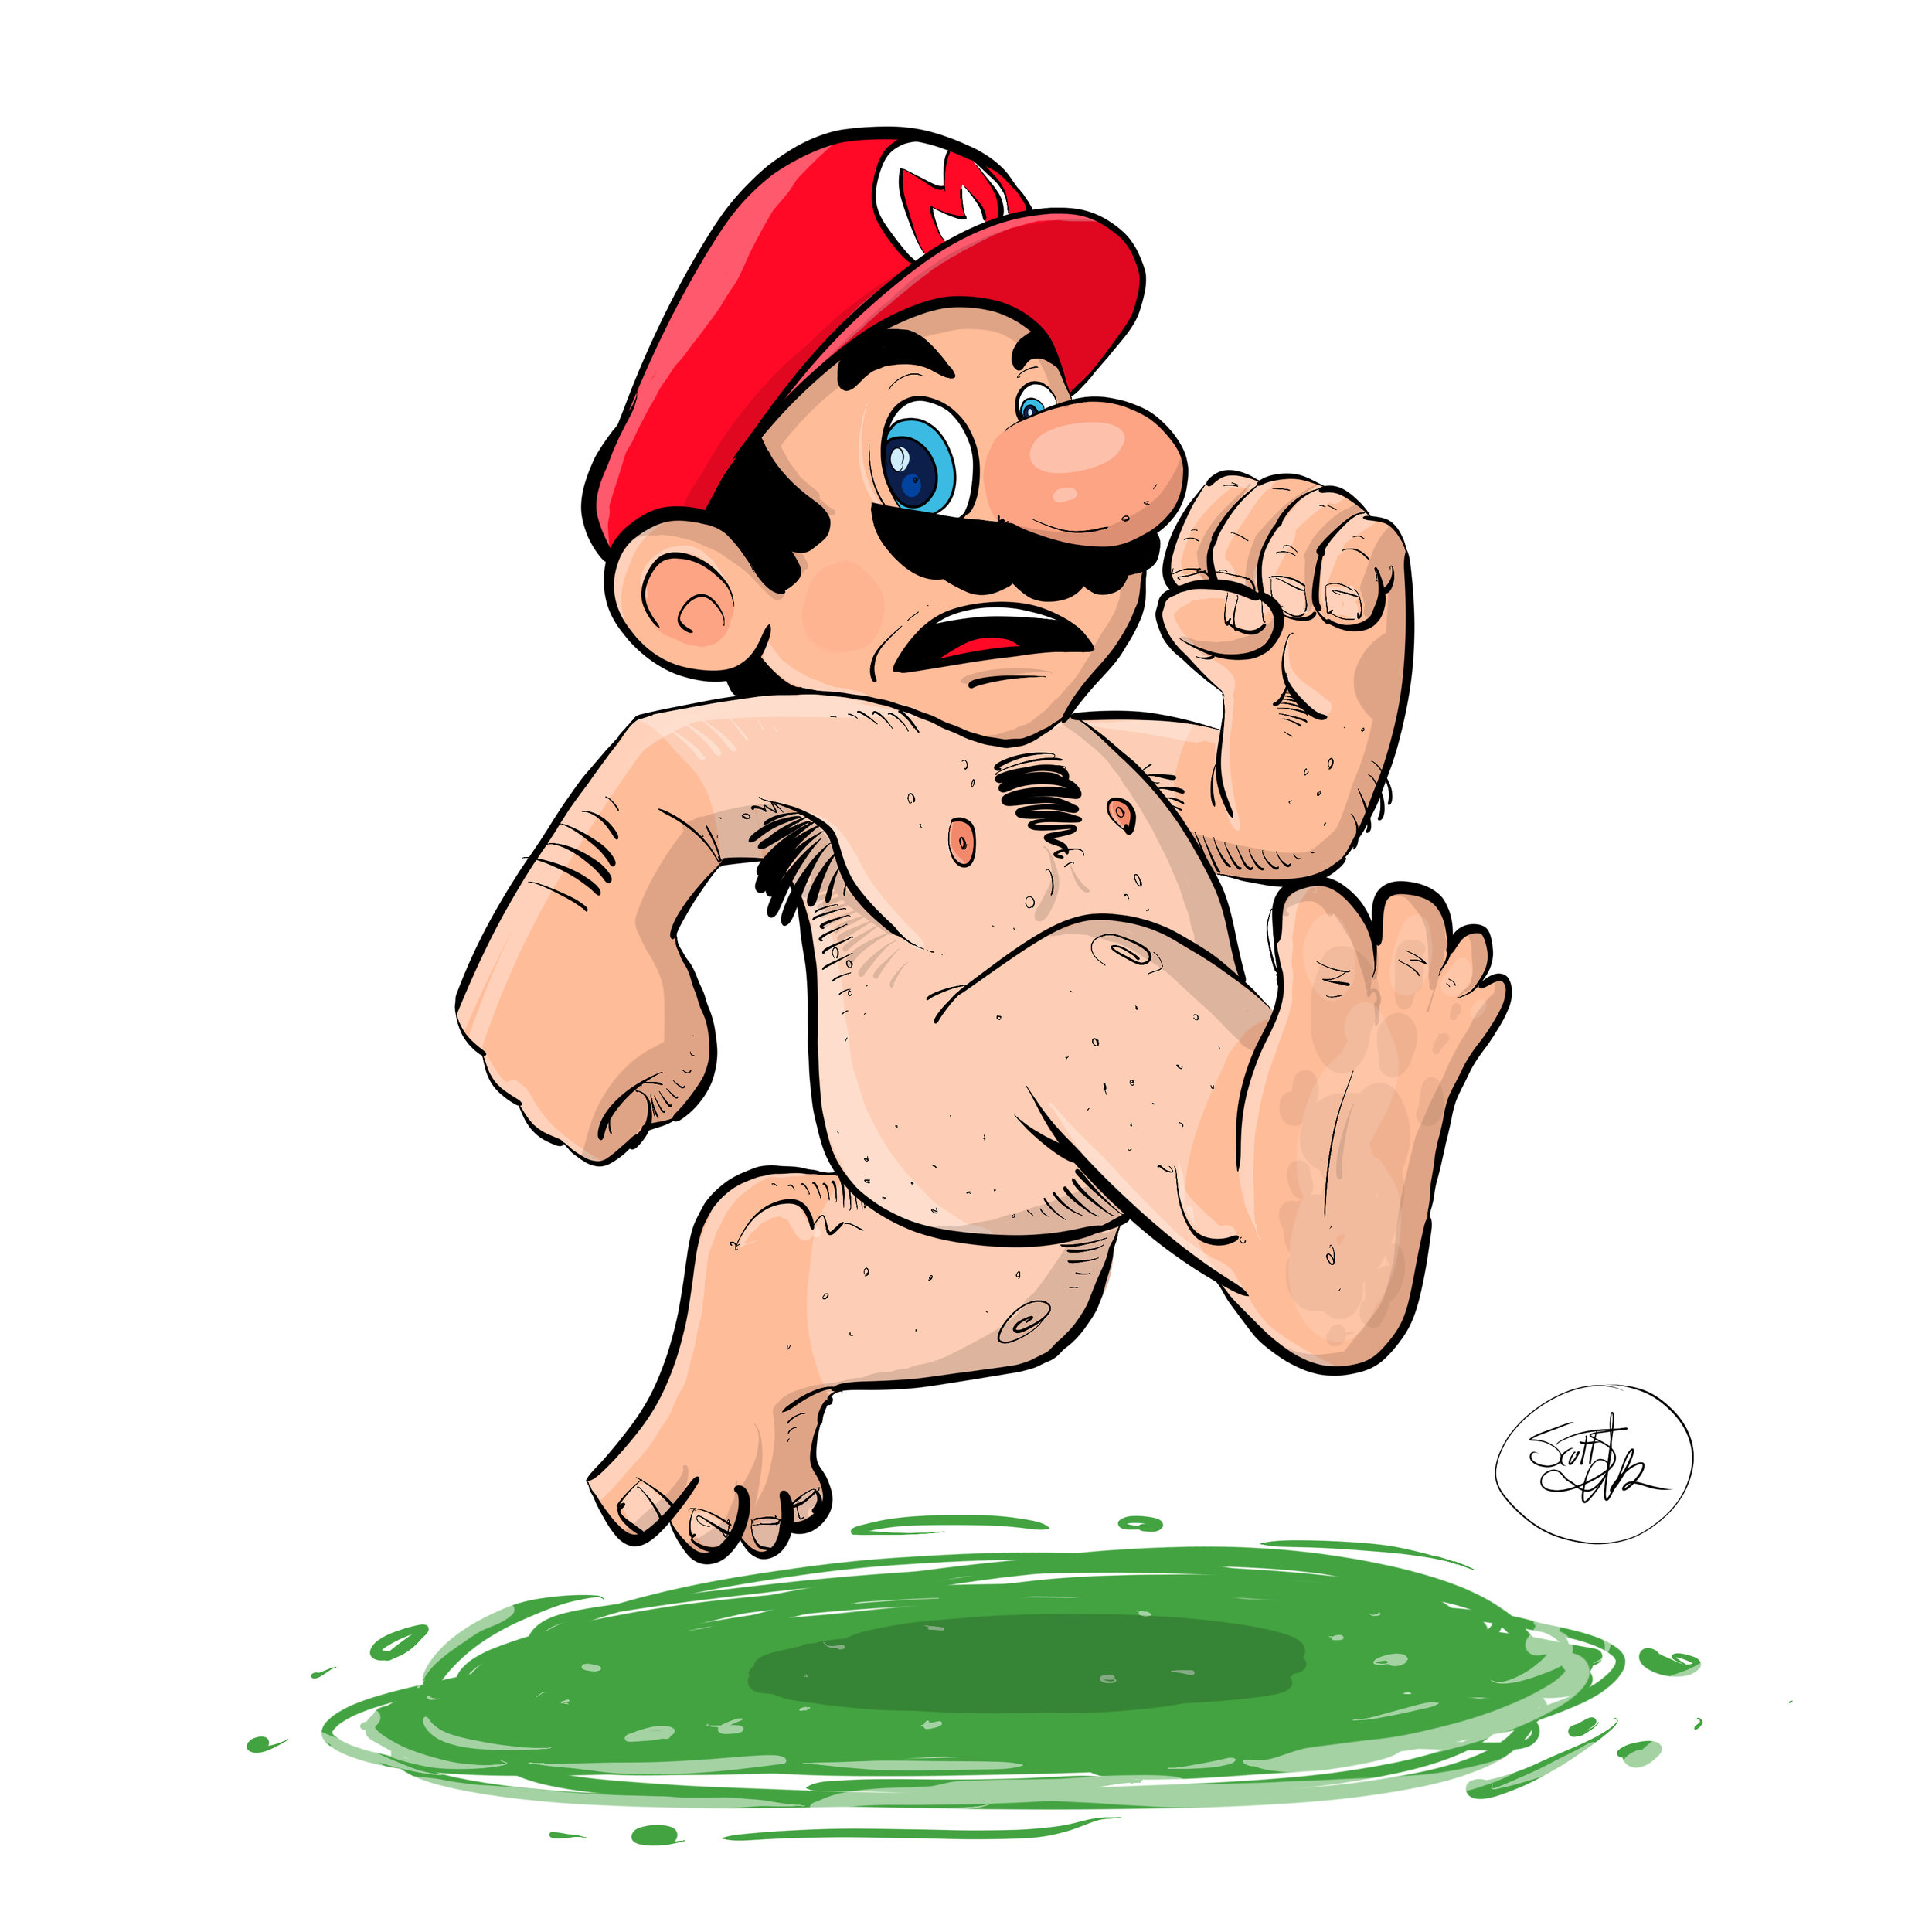 Naked_Mario_12x12.jpg.